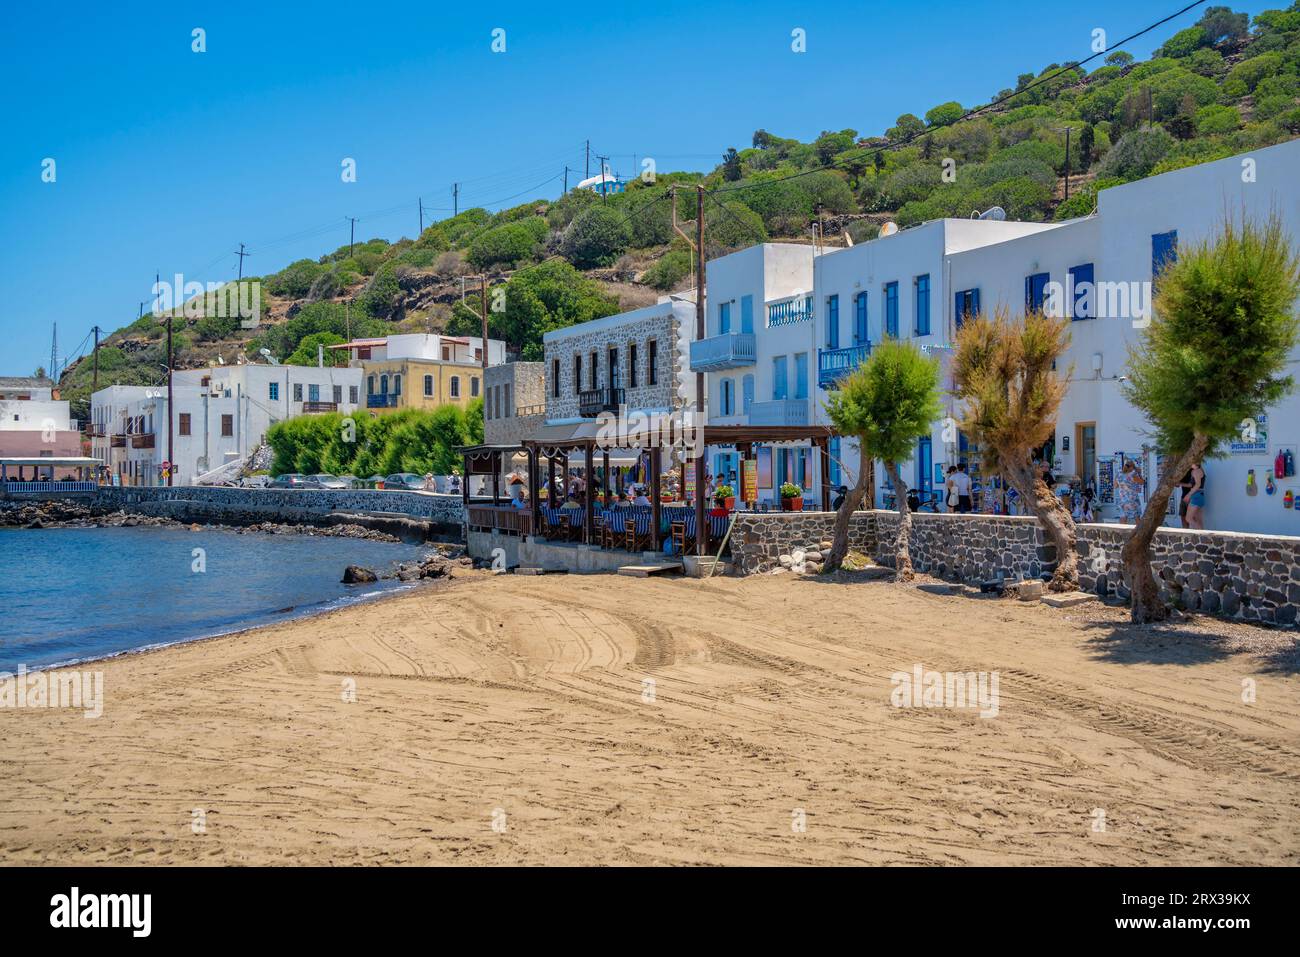 Blick auf den kleinen Strand und die Geschäfte in der Stadt Mandraki, Mandraki, Nisyros, Dodekanes, griechische Inseln, Griechenland, Europa Stockfoto